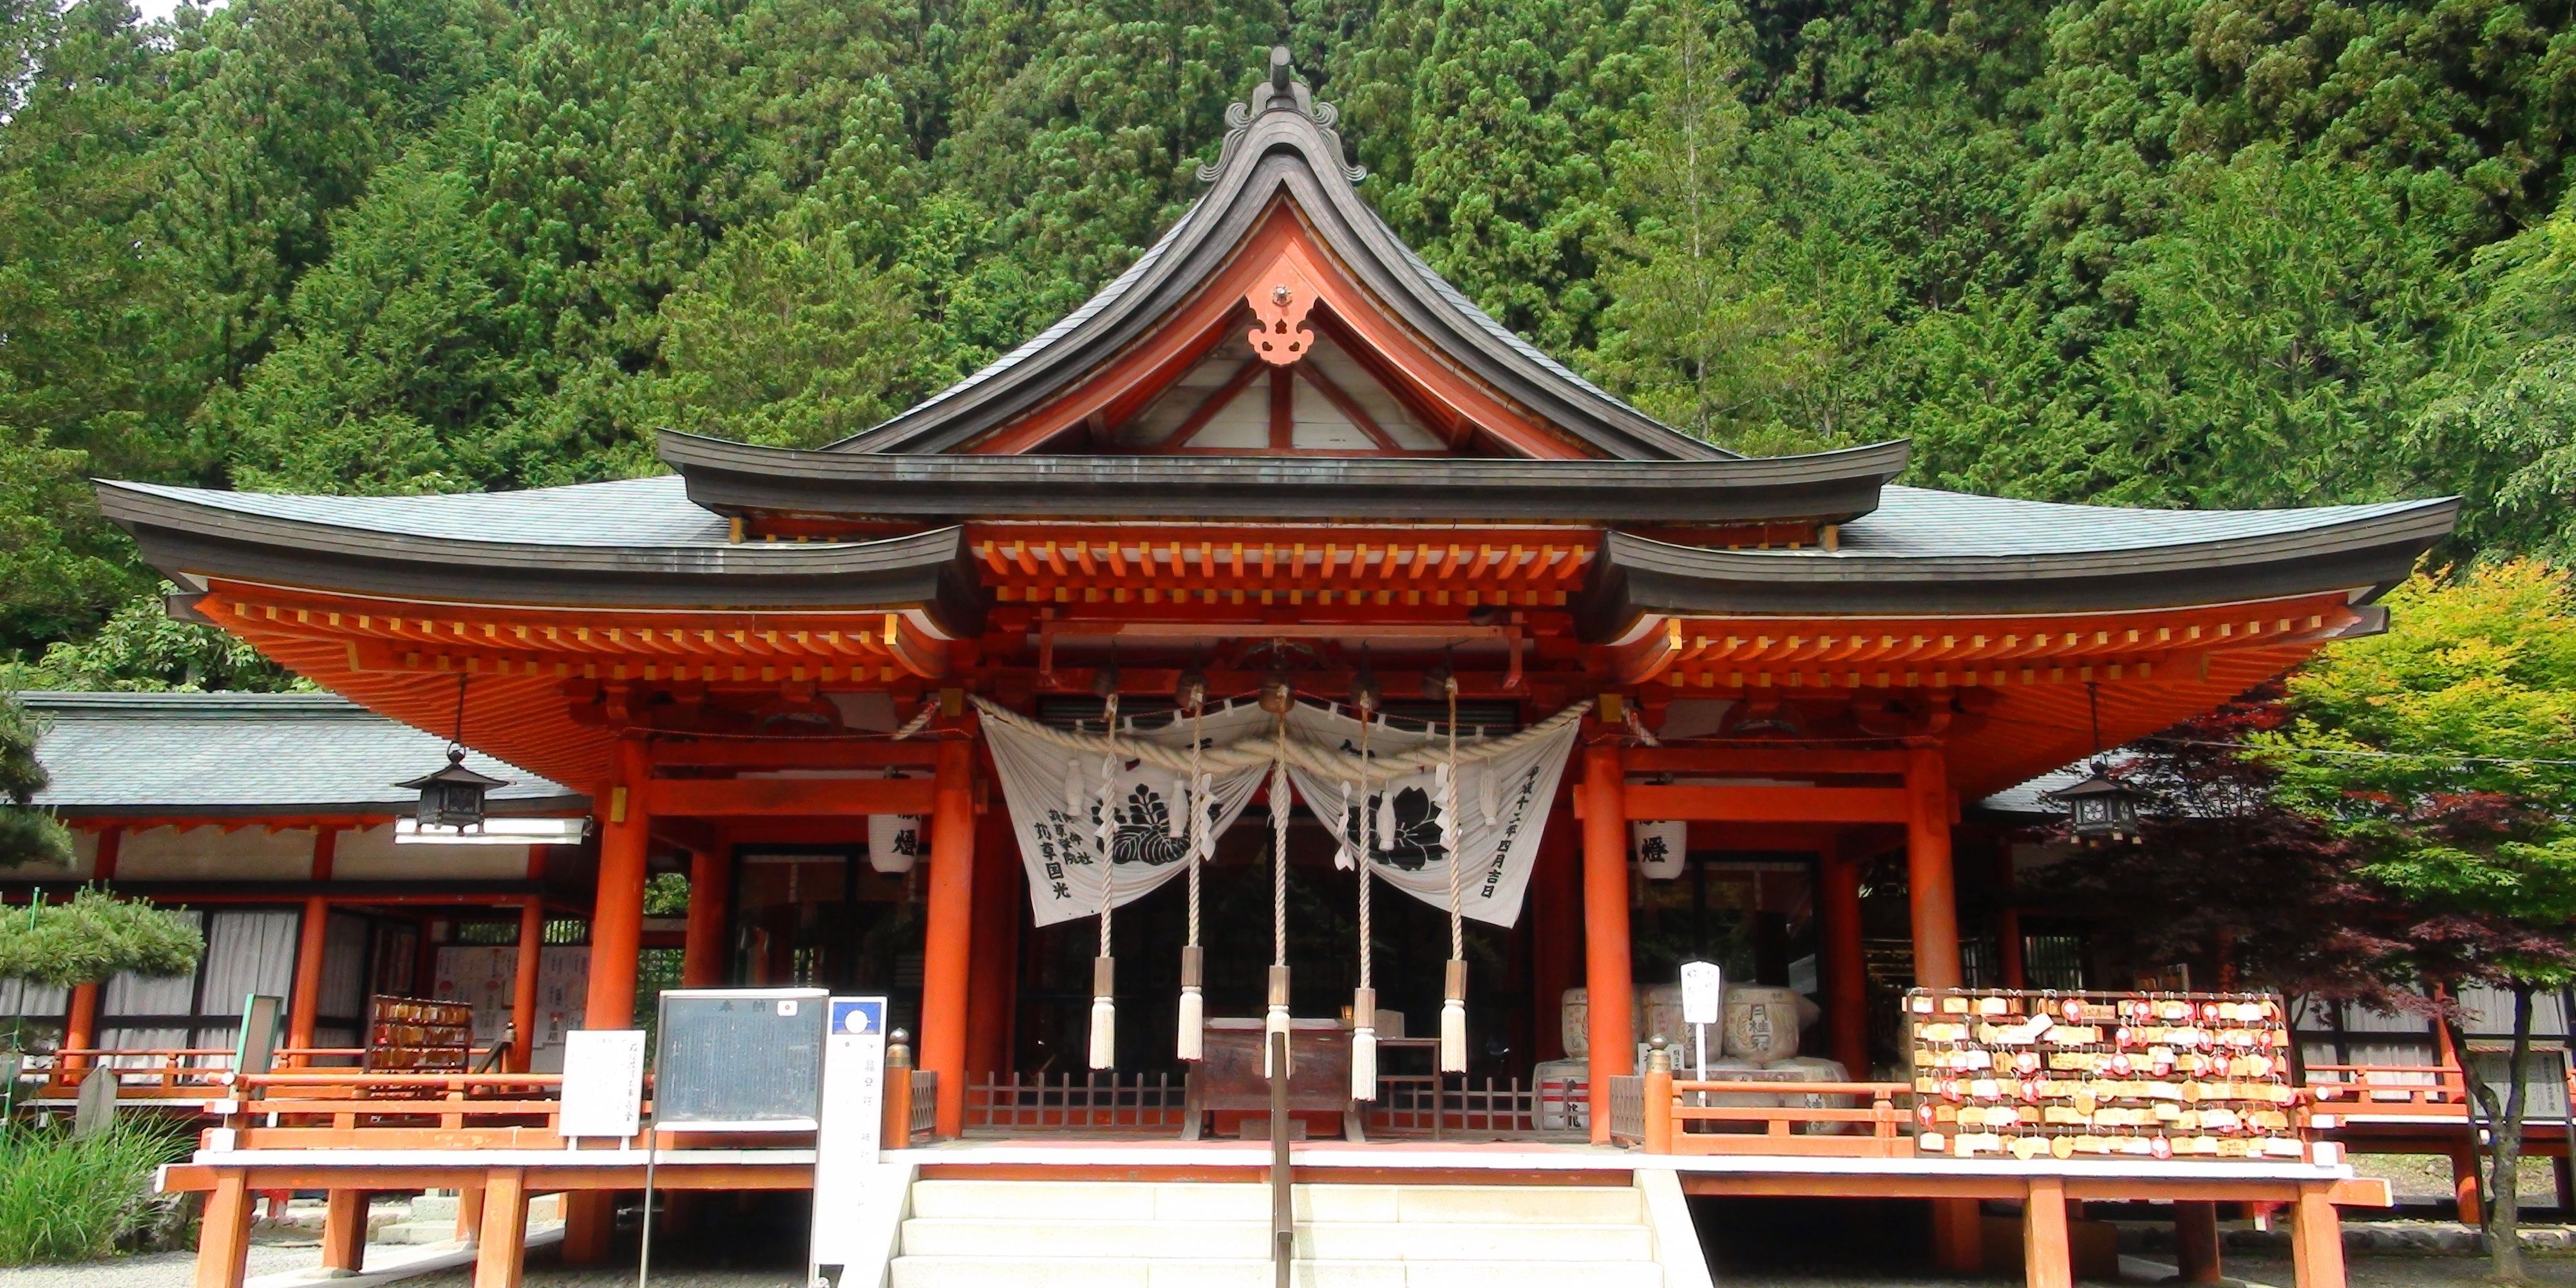 The Kanazakura shrine in Kai, Yamanashi, Japan.